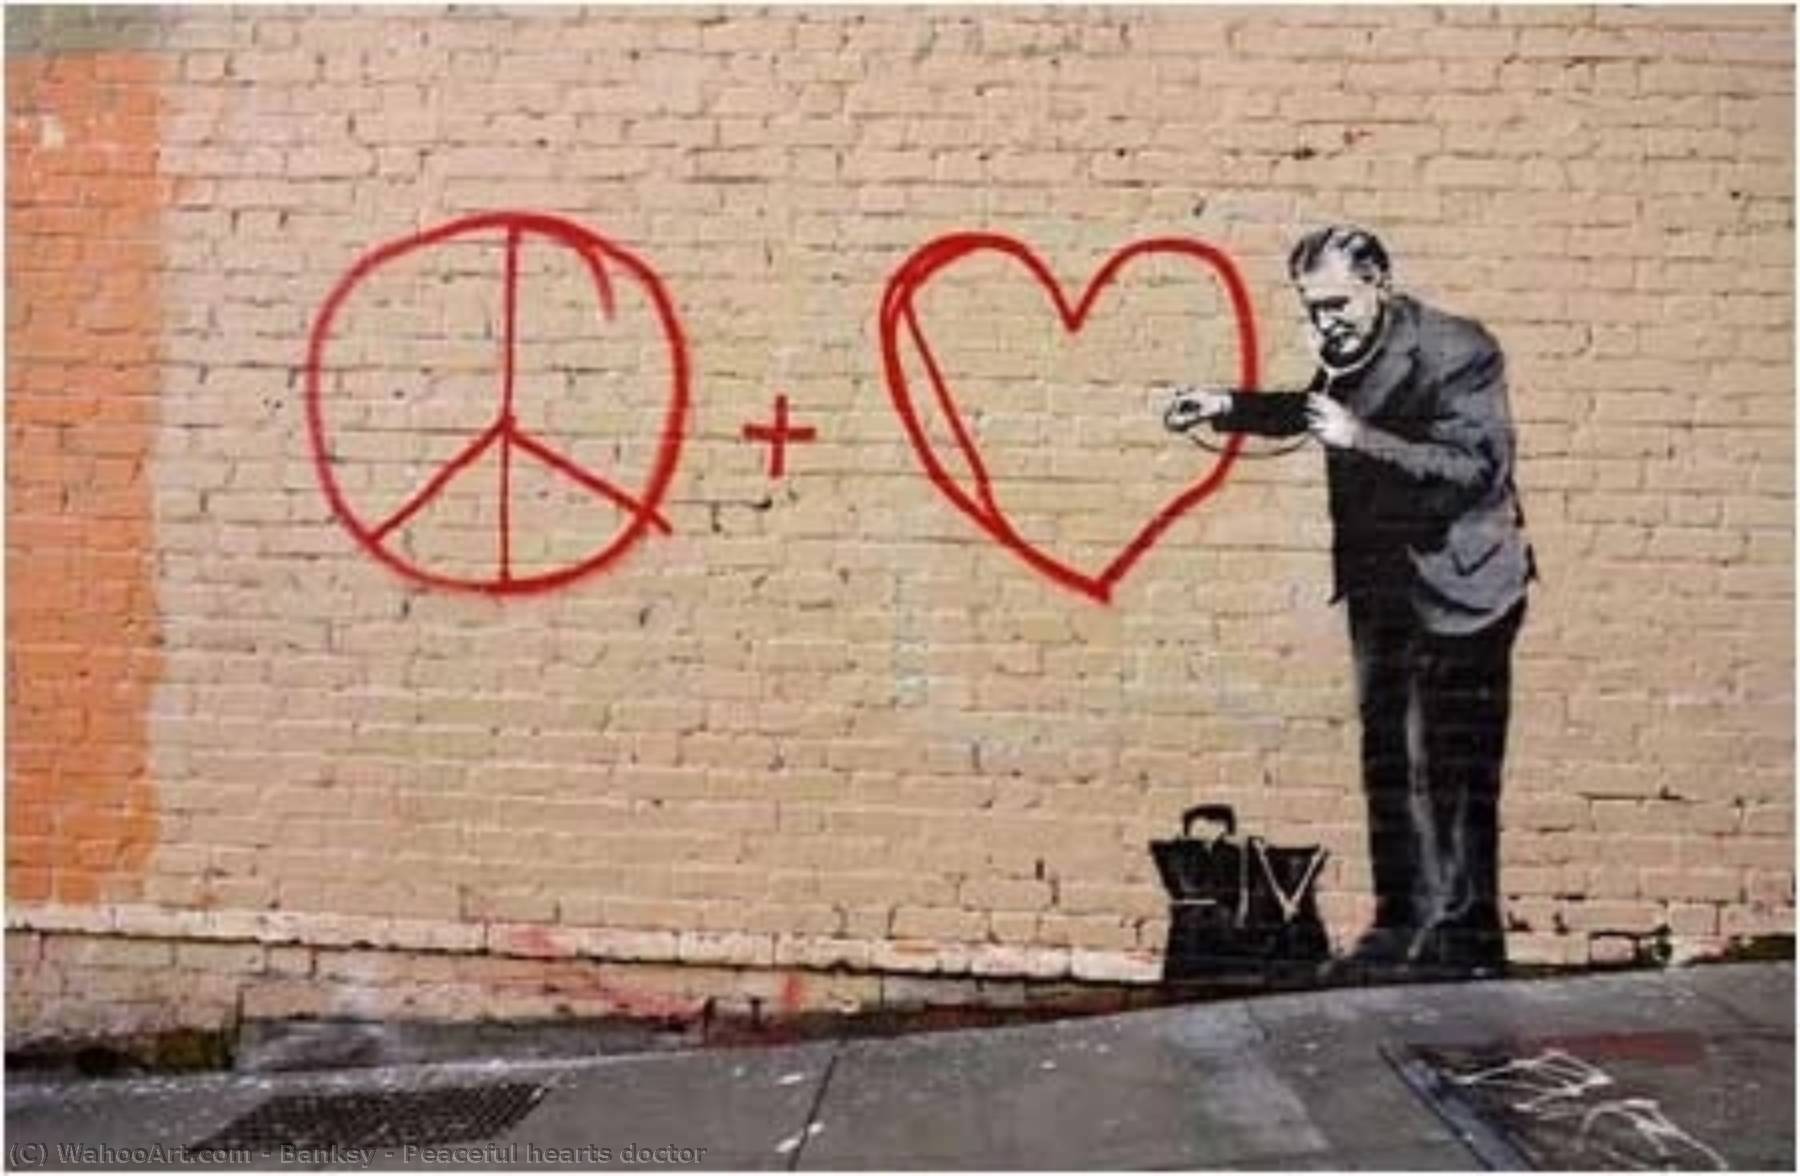 Wikoo.org - موسوعة الفنون الجميلة - اللوحة، العمل الفني Banksy - Peaceful hearts doctor